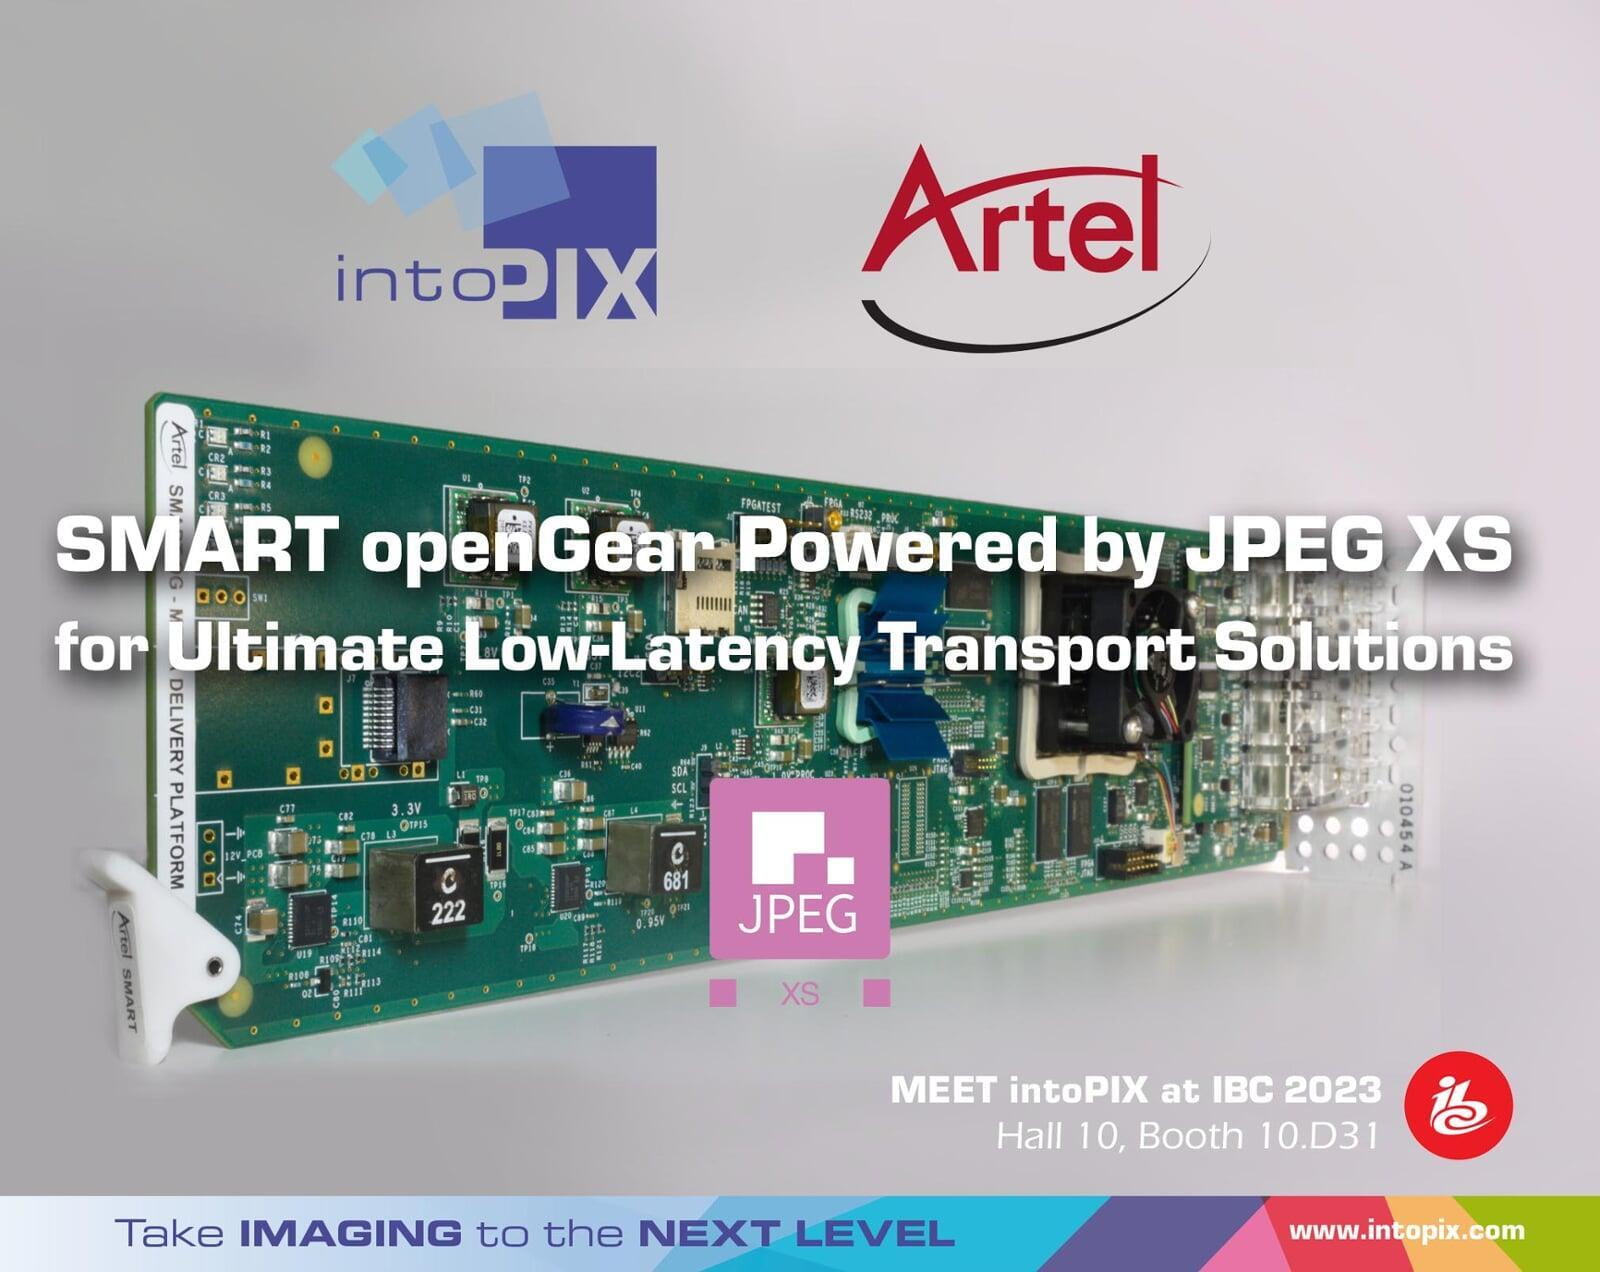 향상된 Artel SMART openGear®는 궁극적인 저지연 전송 솔루션을 위해 intoPIX JPEG XS 기술을 활용합니다.